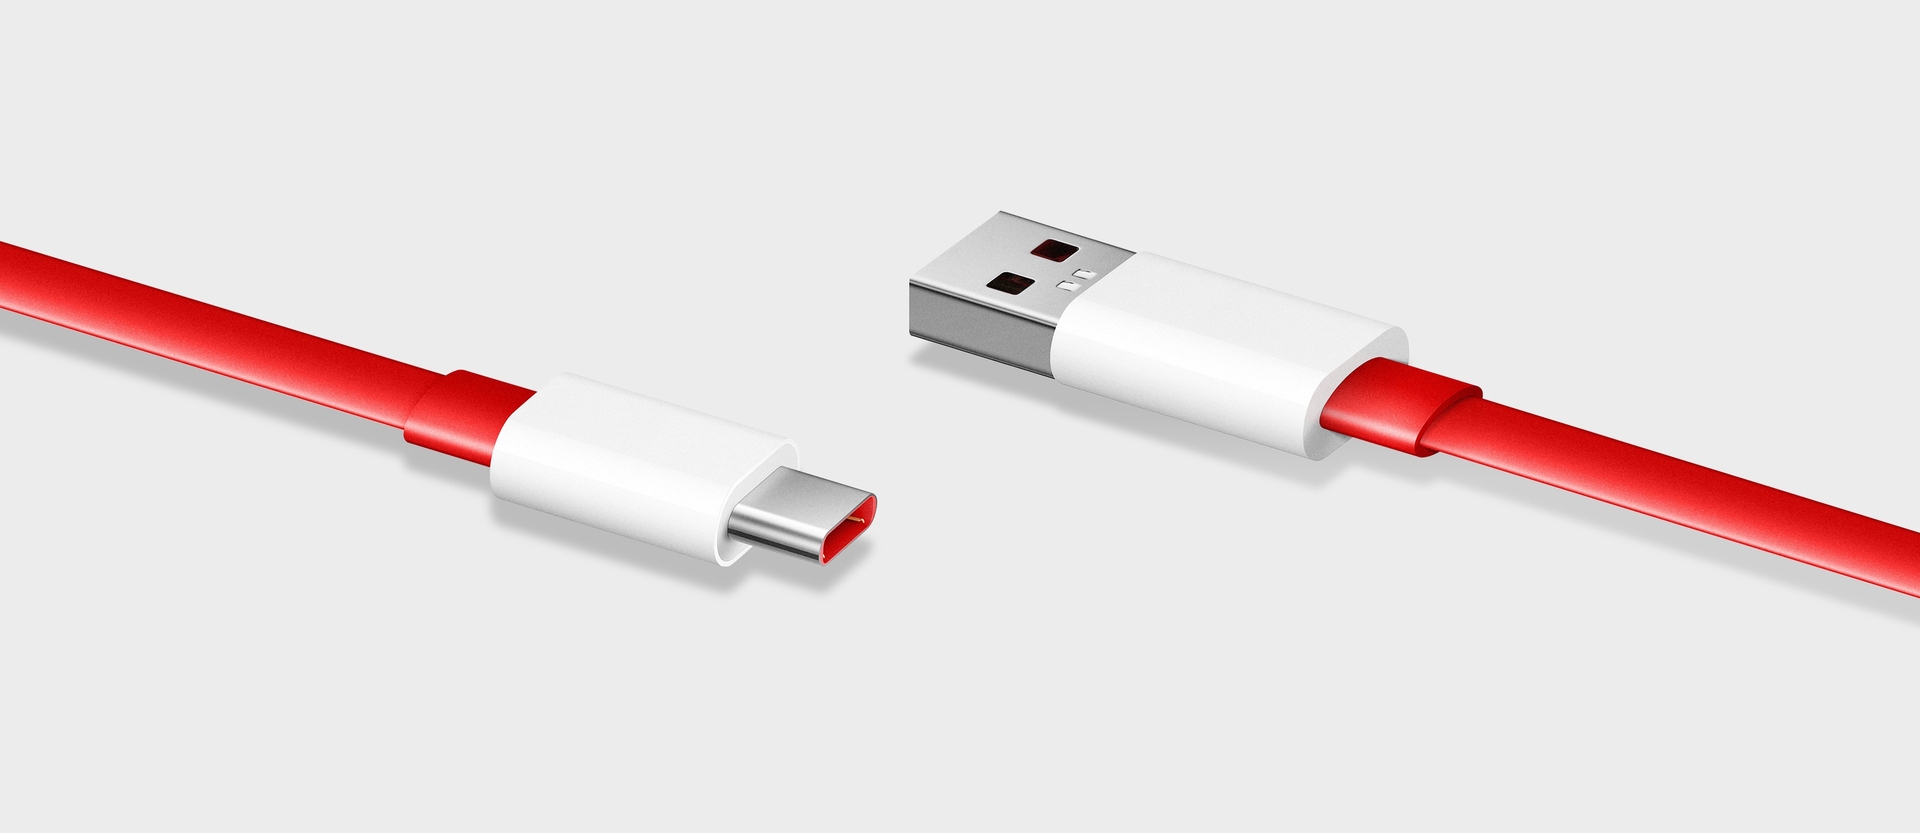 Przedstawiono nowe logo USB Typu-C, ułatwiające identyfikację mocy akcesoriów i prędkości transferu